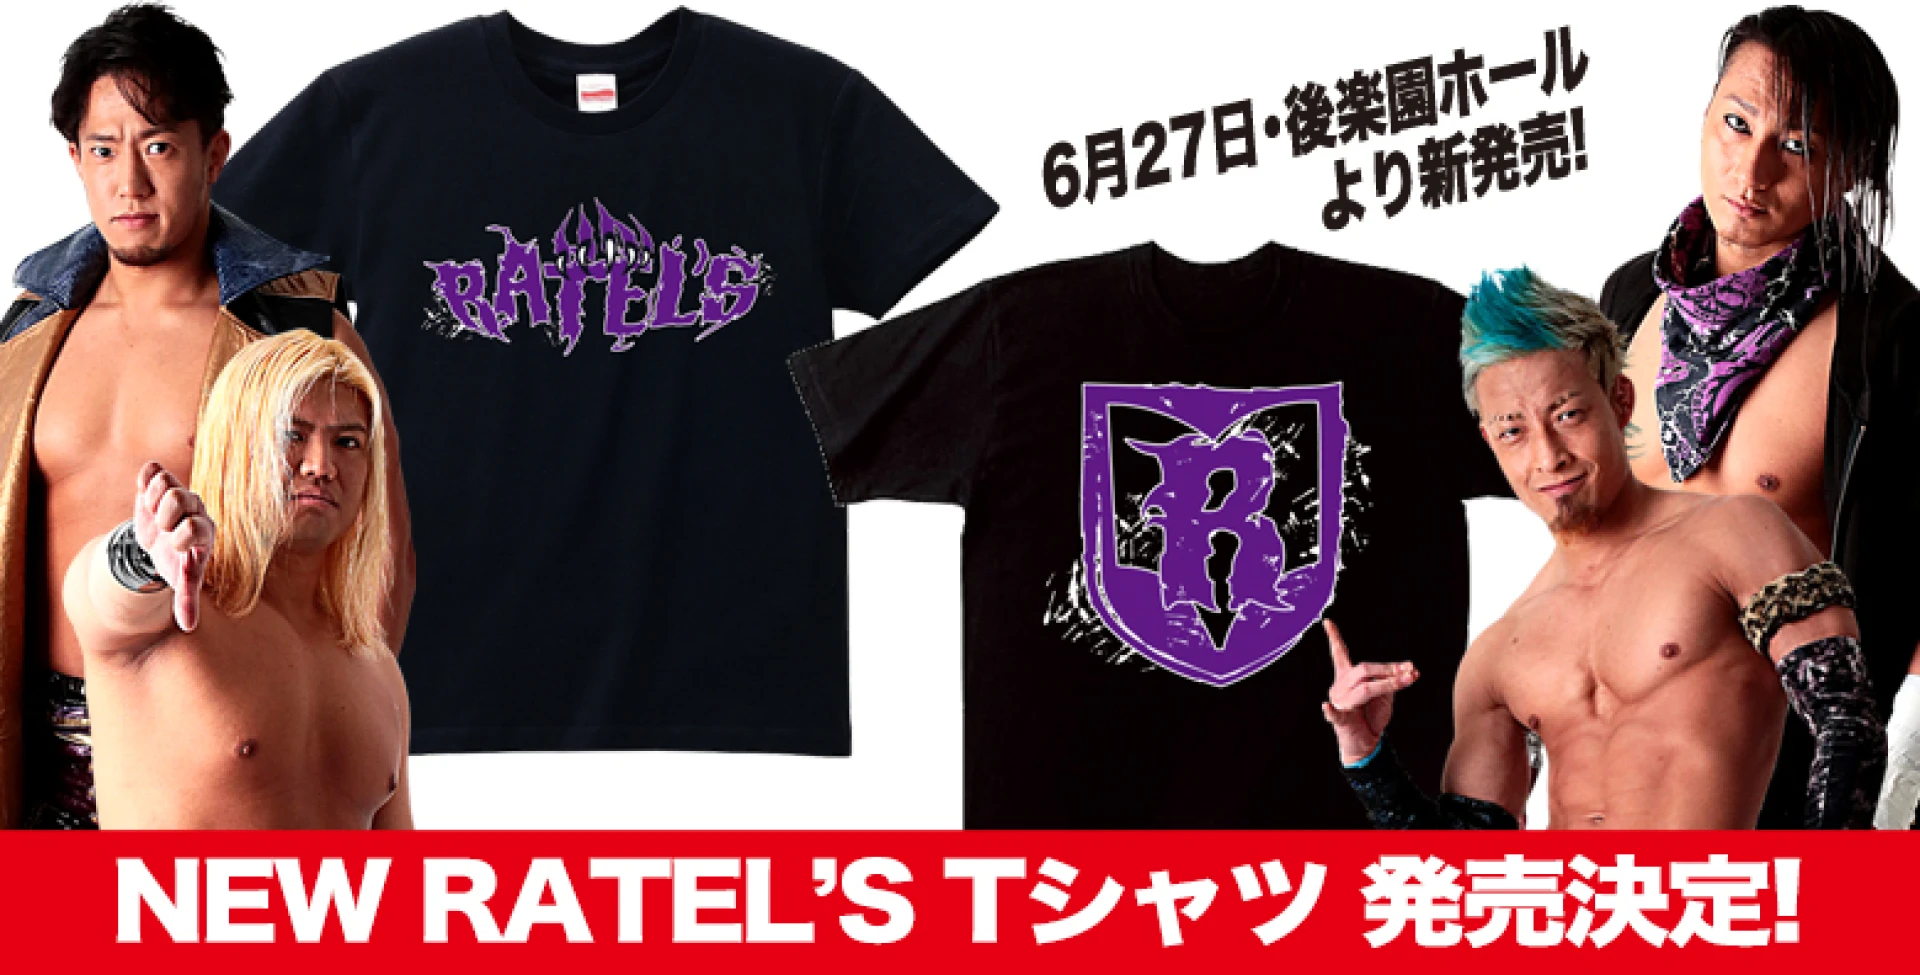 【6･27後楽園より発売開始!】NEW RATEL'S Tシャツ新発売